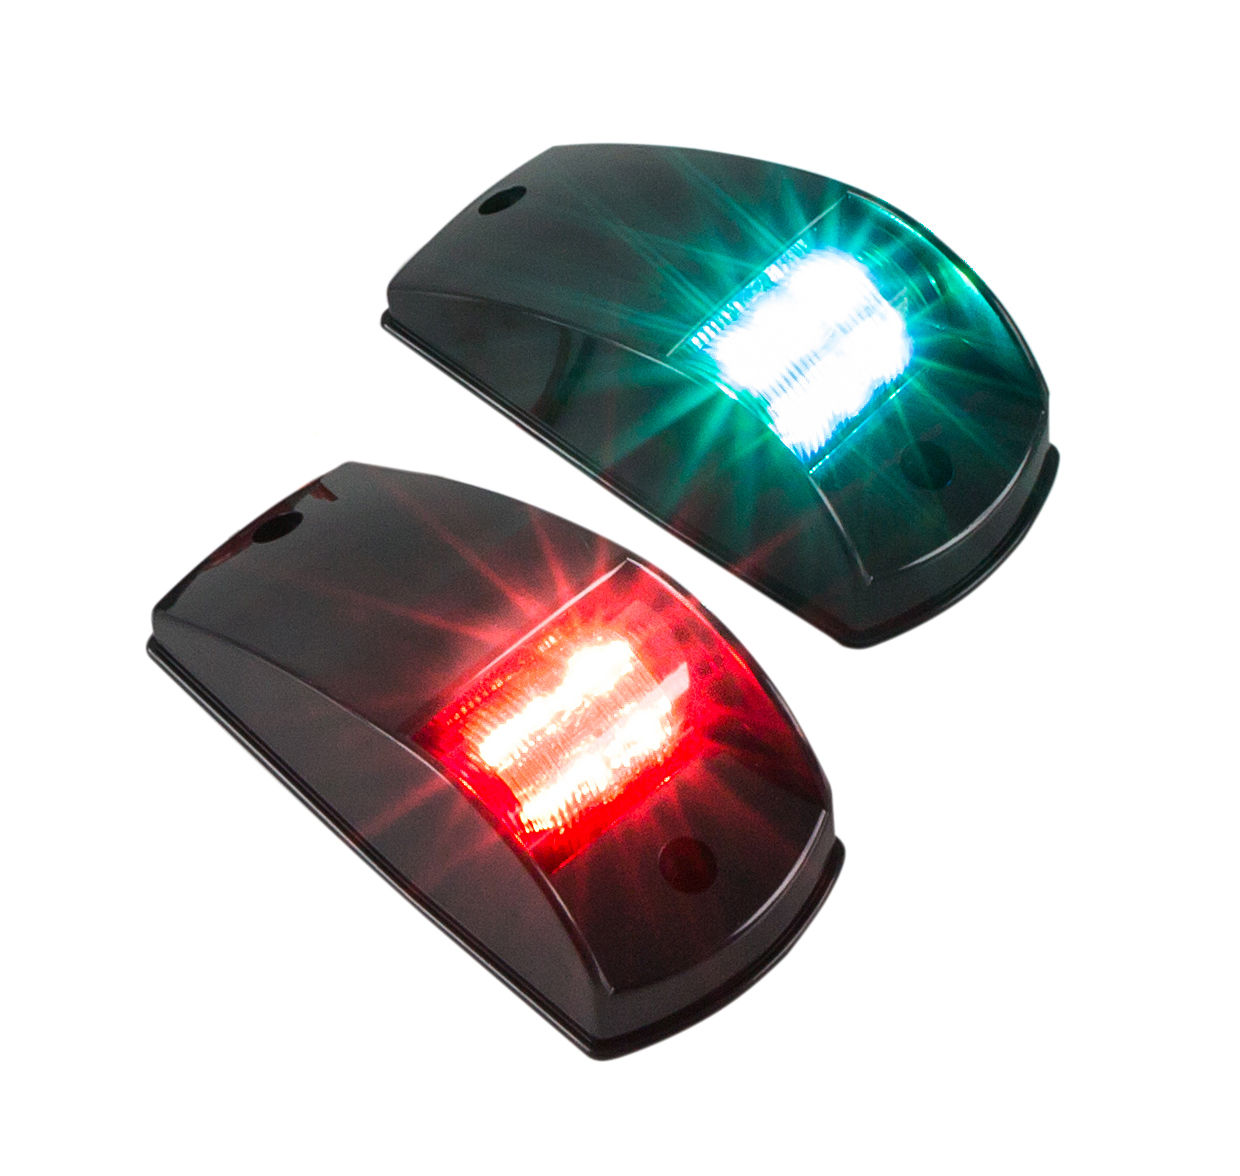 Огни ходовые комплект (красный, зеленый) LED, черн. корпус